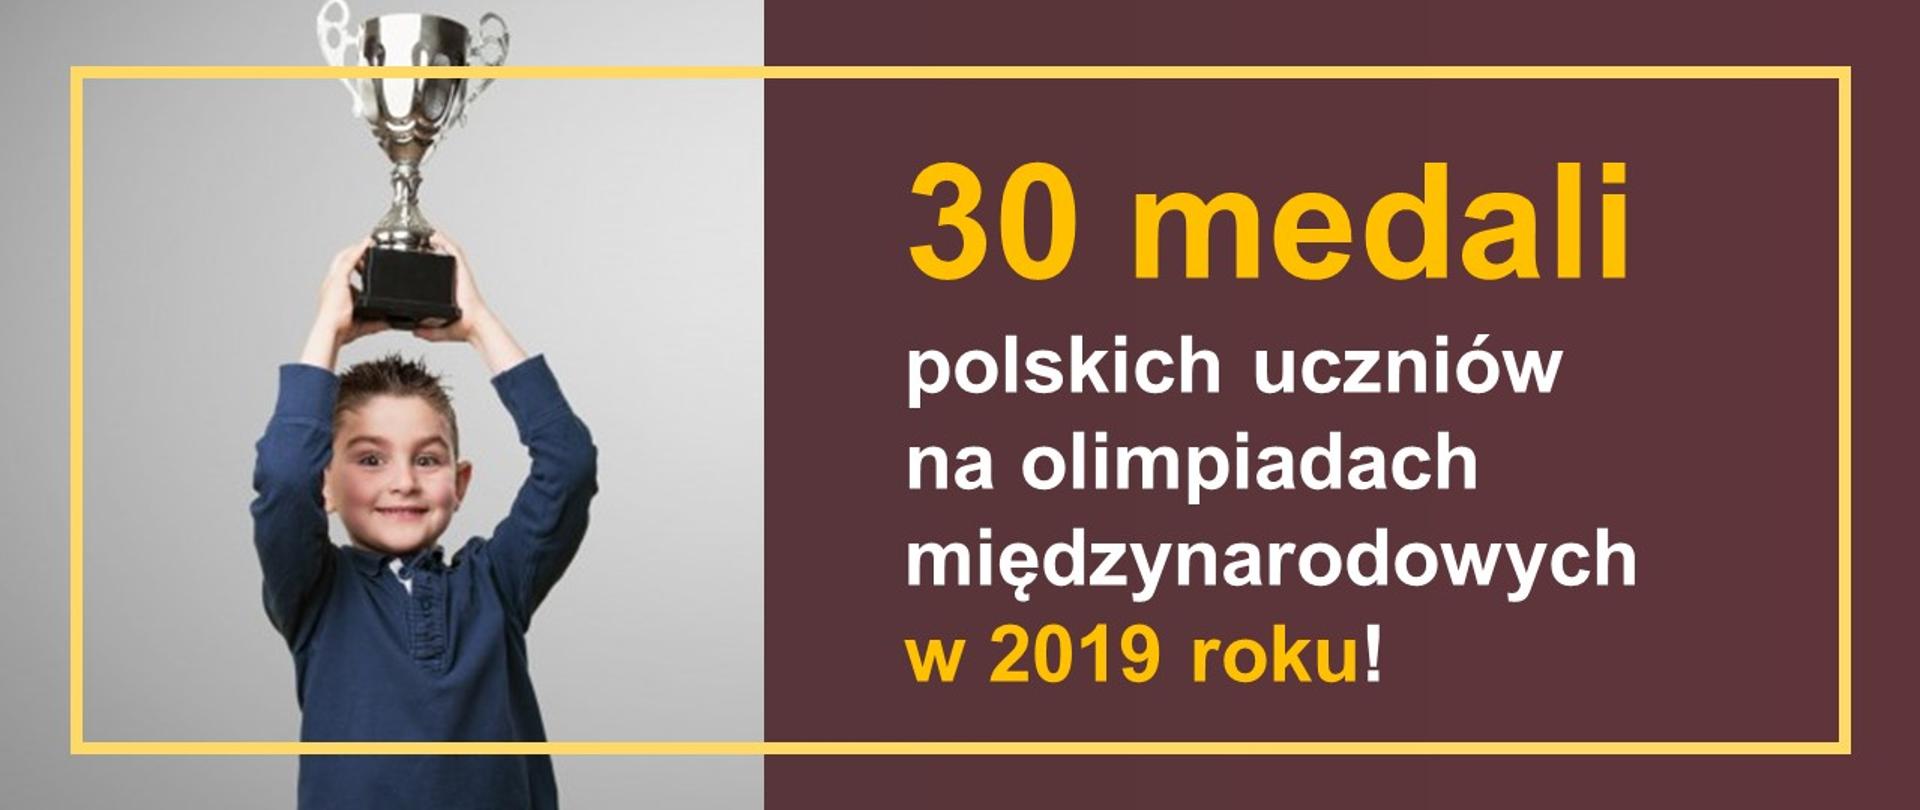 Chłopiec trzyma puchar, po prawo napis "30 medali polskich uczniów na olimpiadach międzynarodowych w 2019 roku!"